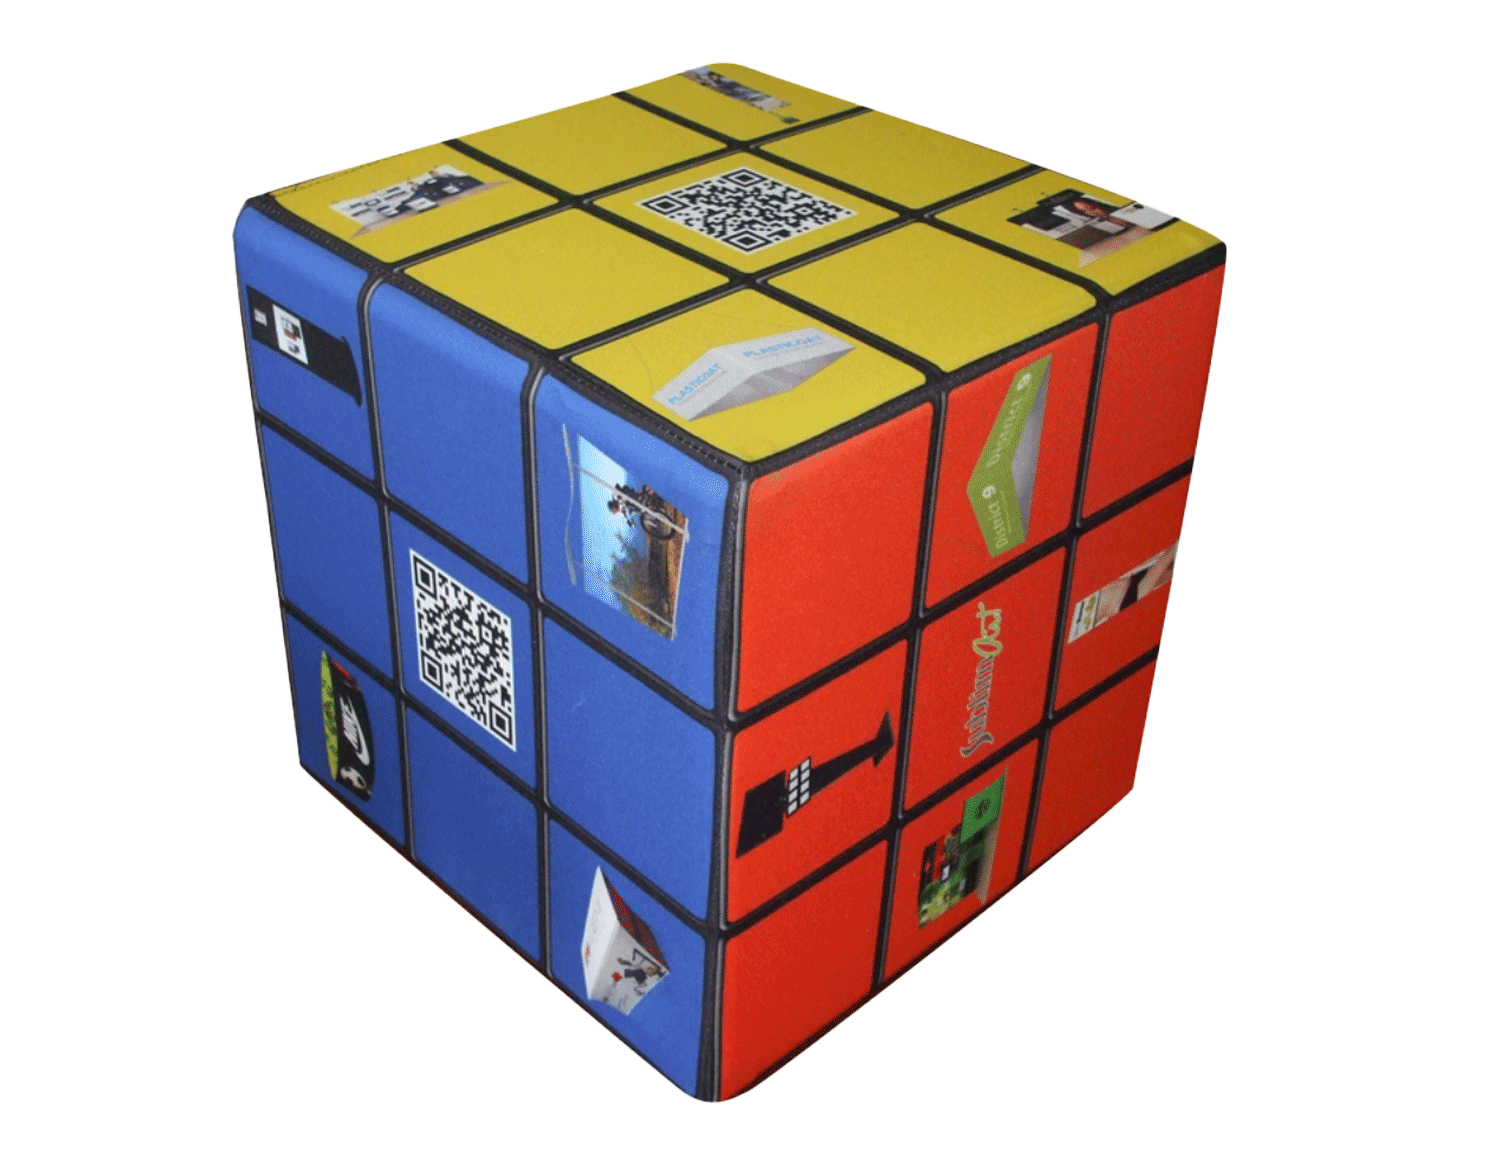 Toy type cube